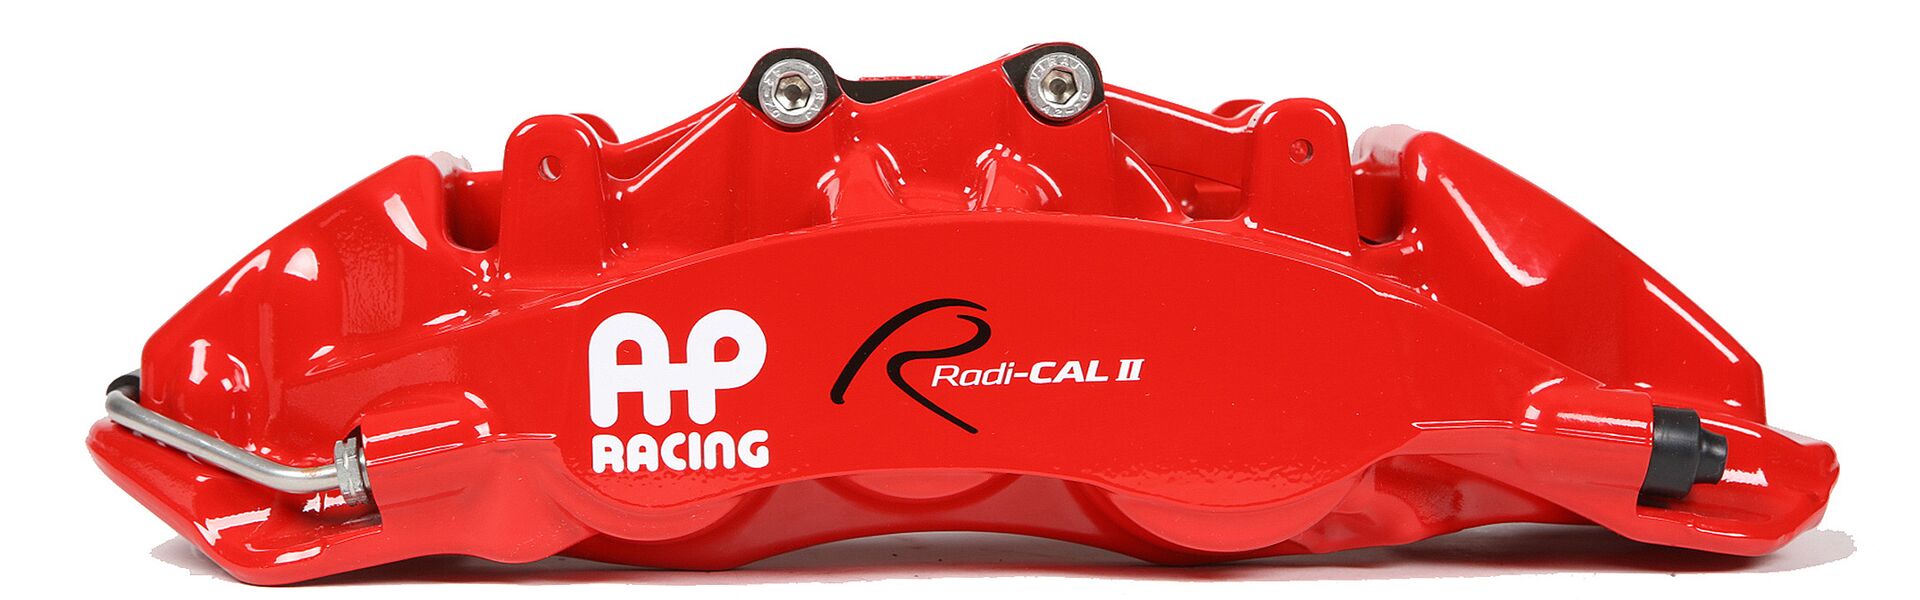 Sada přední AP Racing pro Trackday/Track i pro 18 kola - kompletní kit